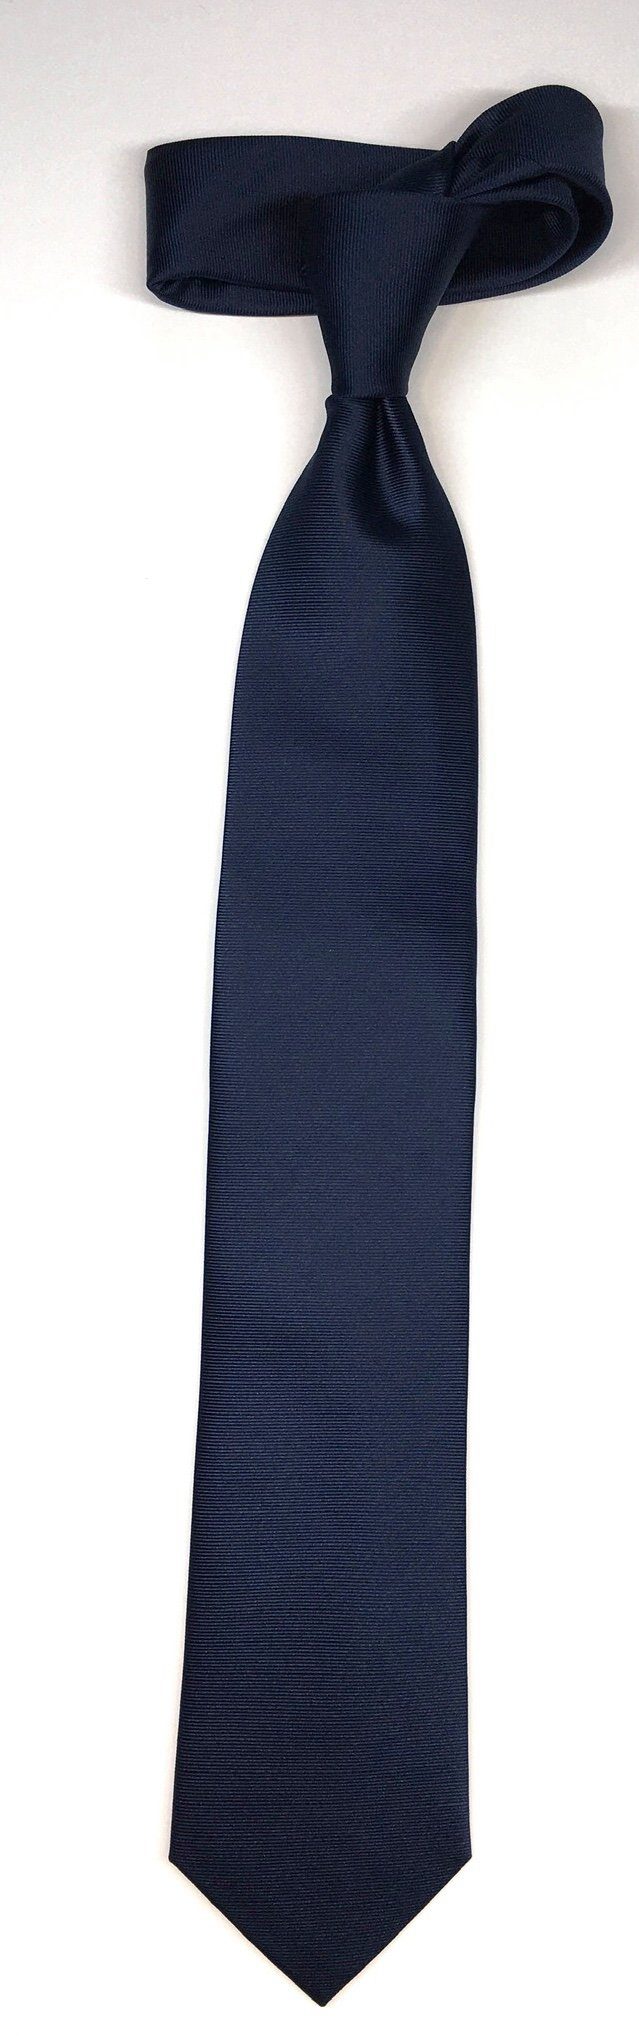 Uni Krawatte edlen Design im Uni Krawatte Marine Seidenfalter 7cm Krawatte Seidenfalter Seidenfalter